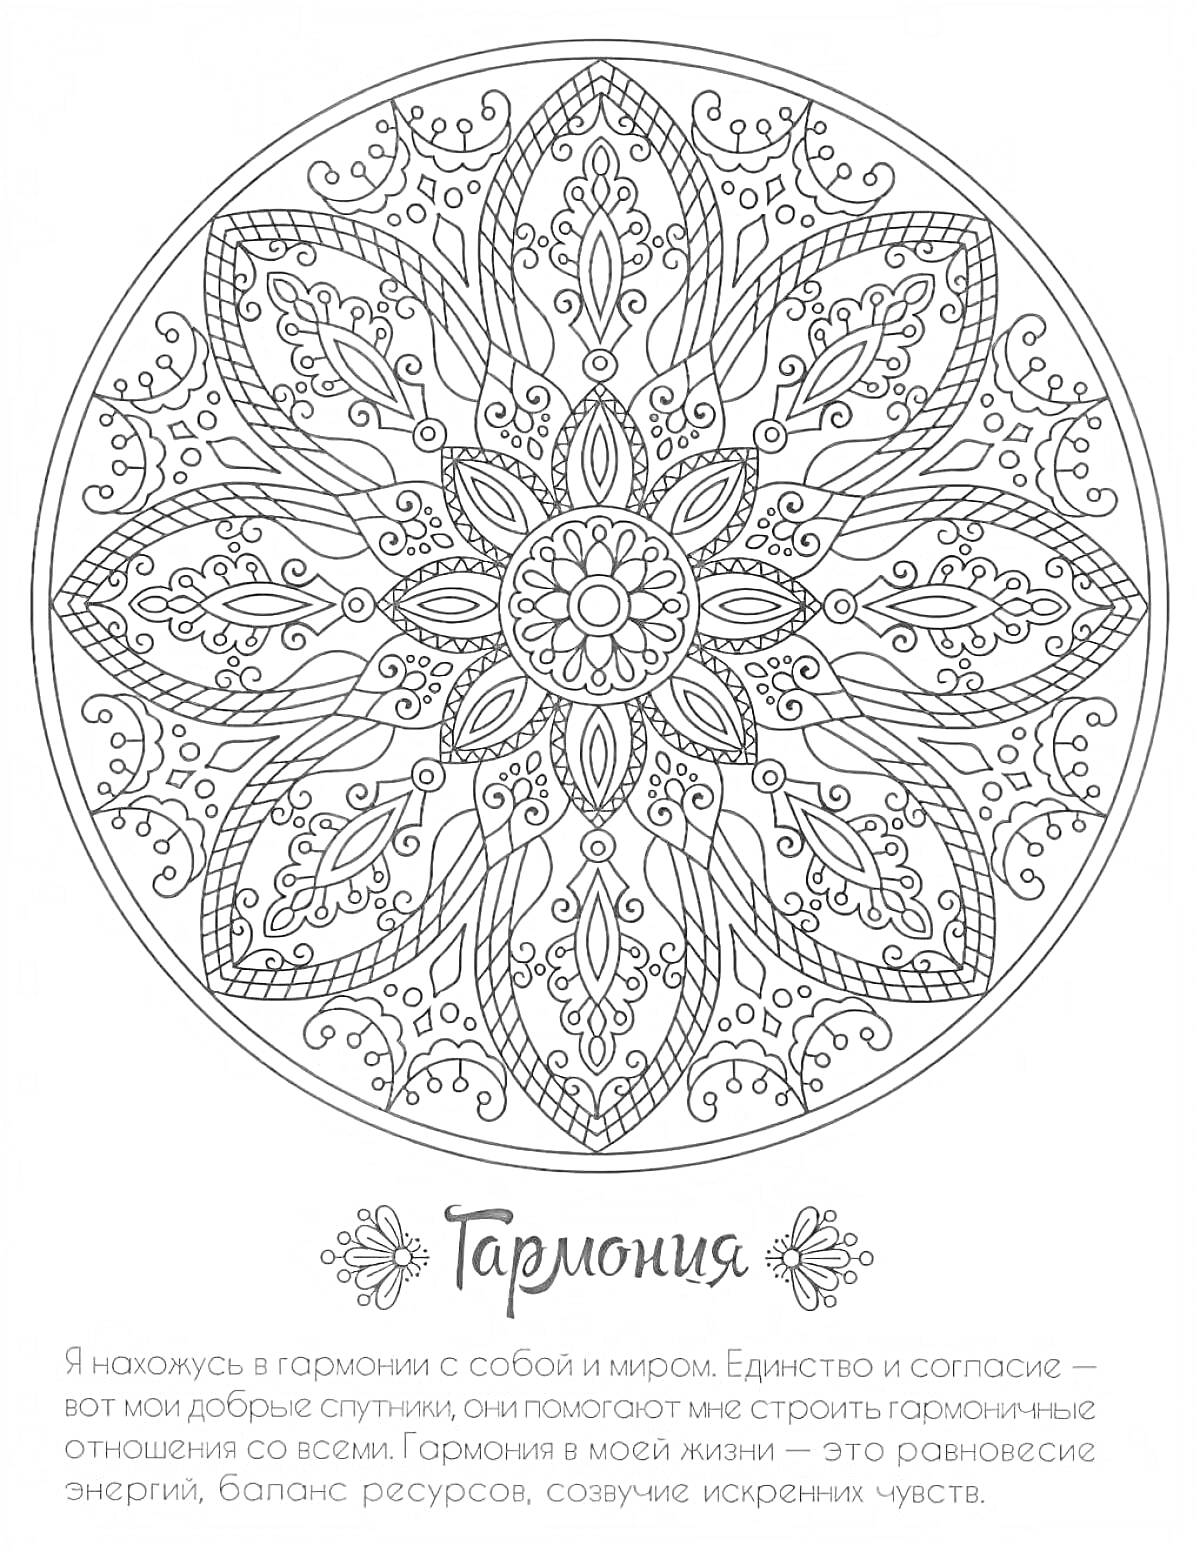 Гармония - круглая мандала с цветочным узором и симметричными элементами